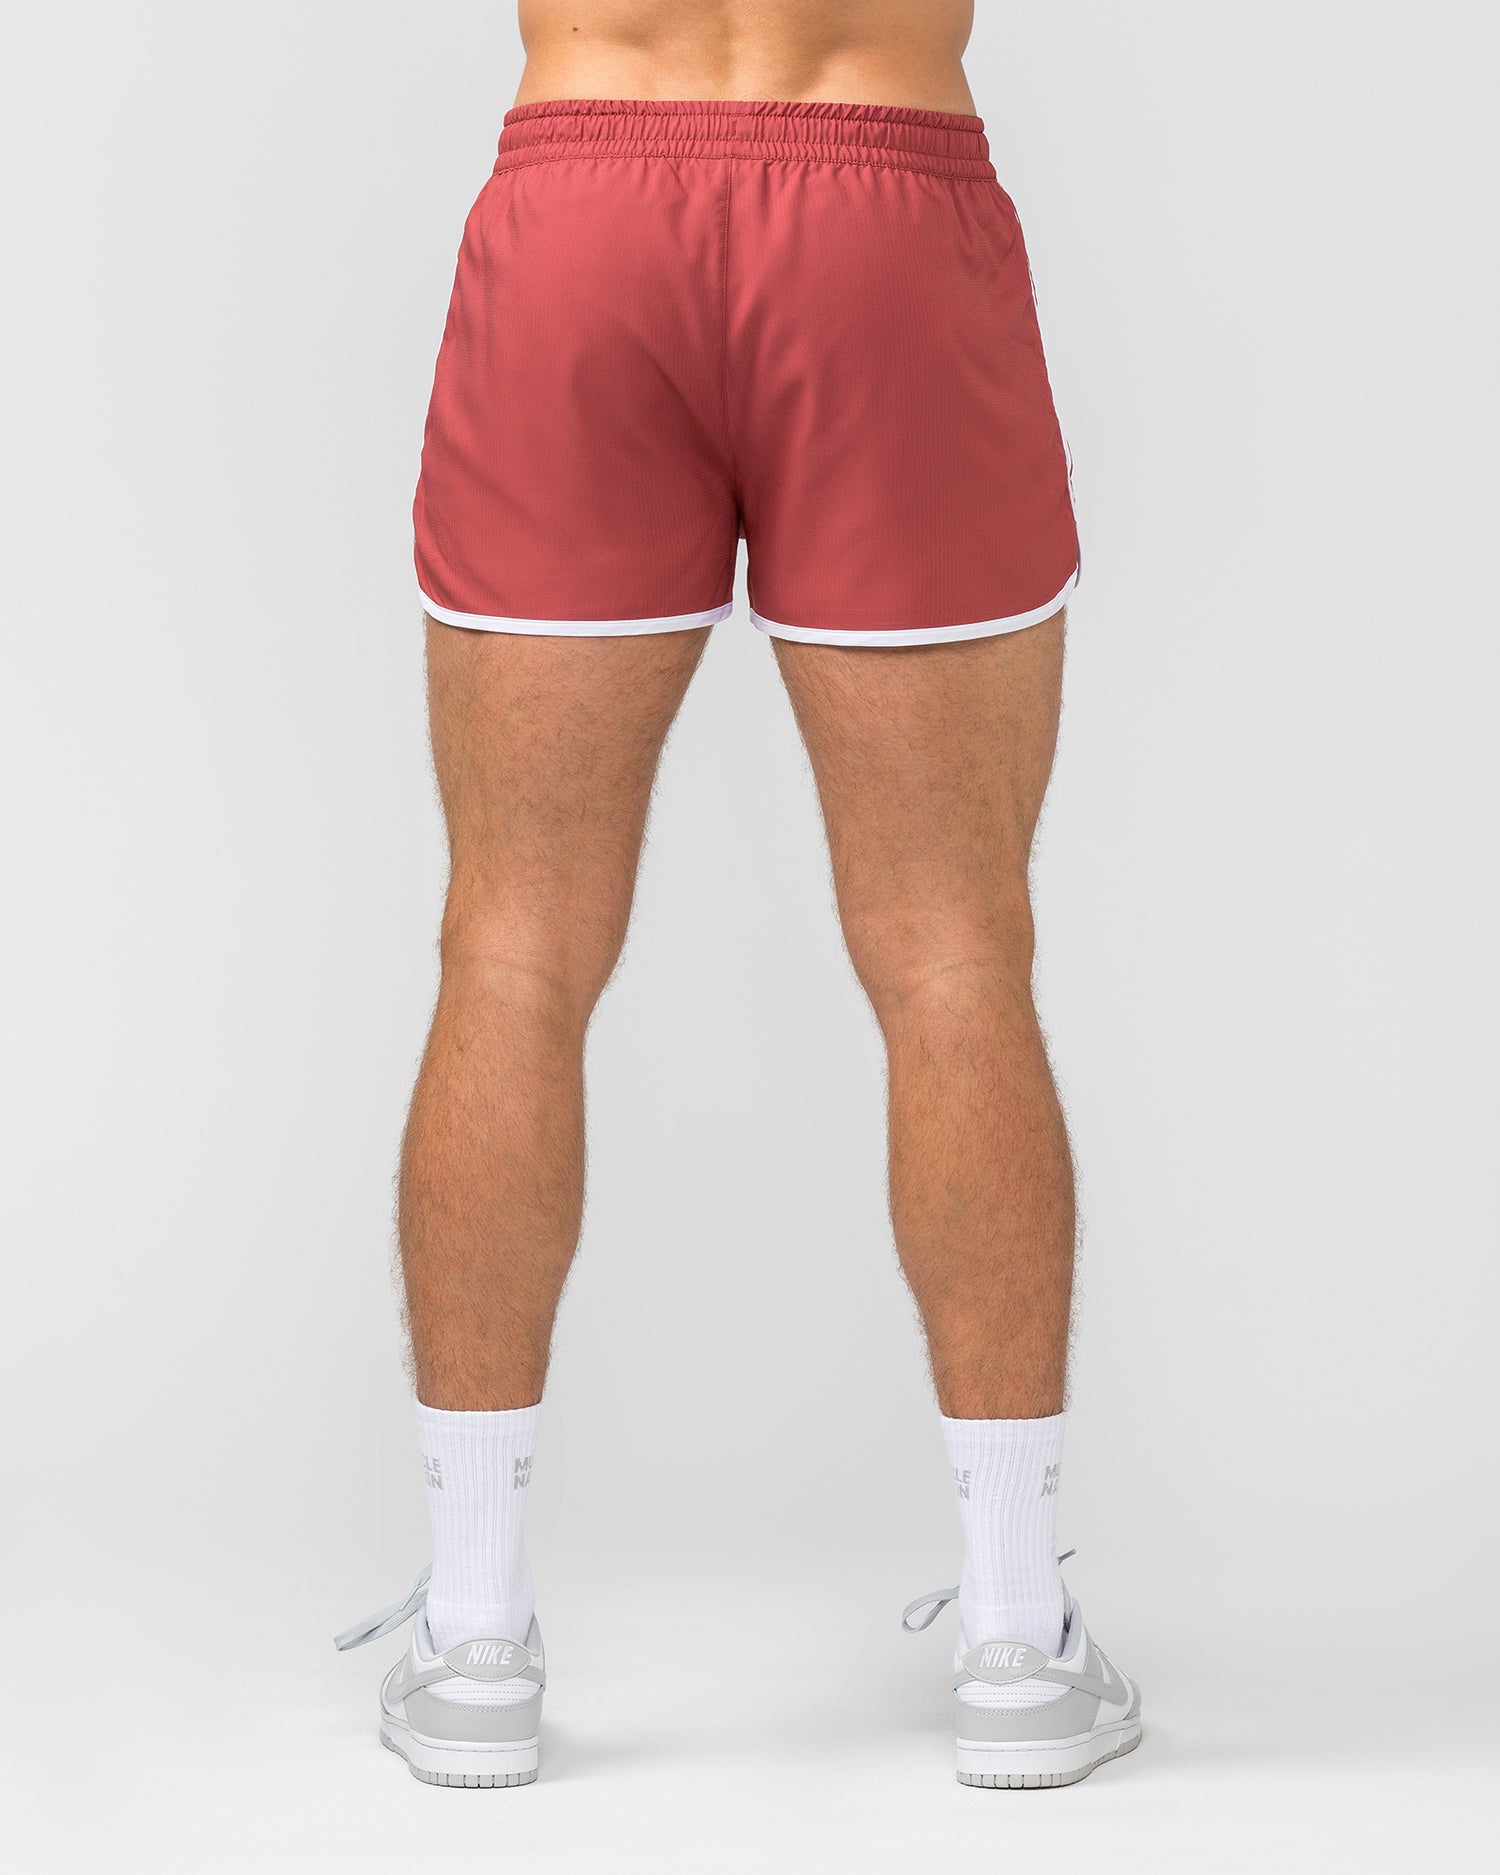 Retro Shorts - Dusty Red